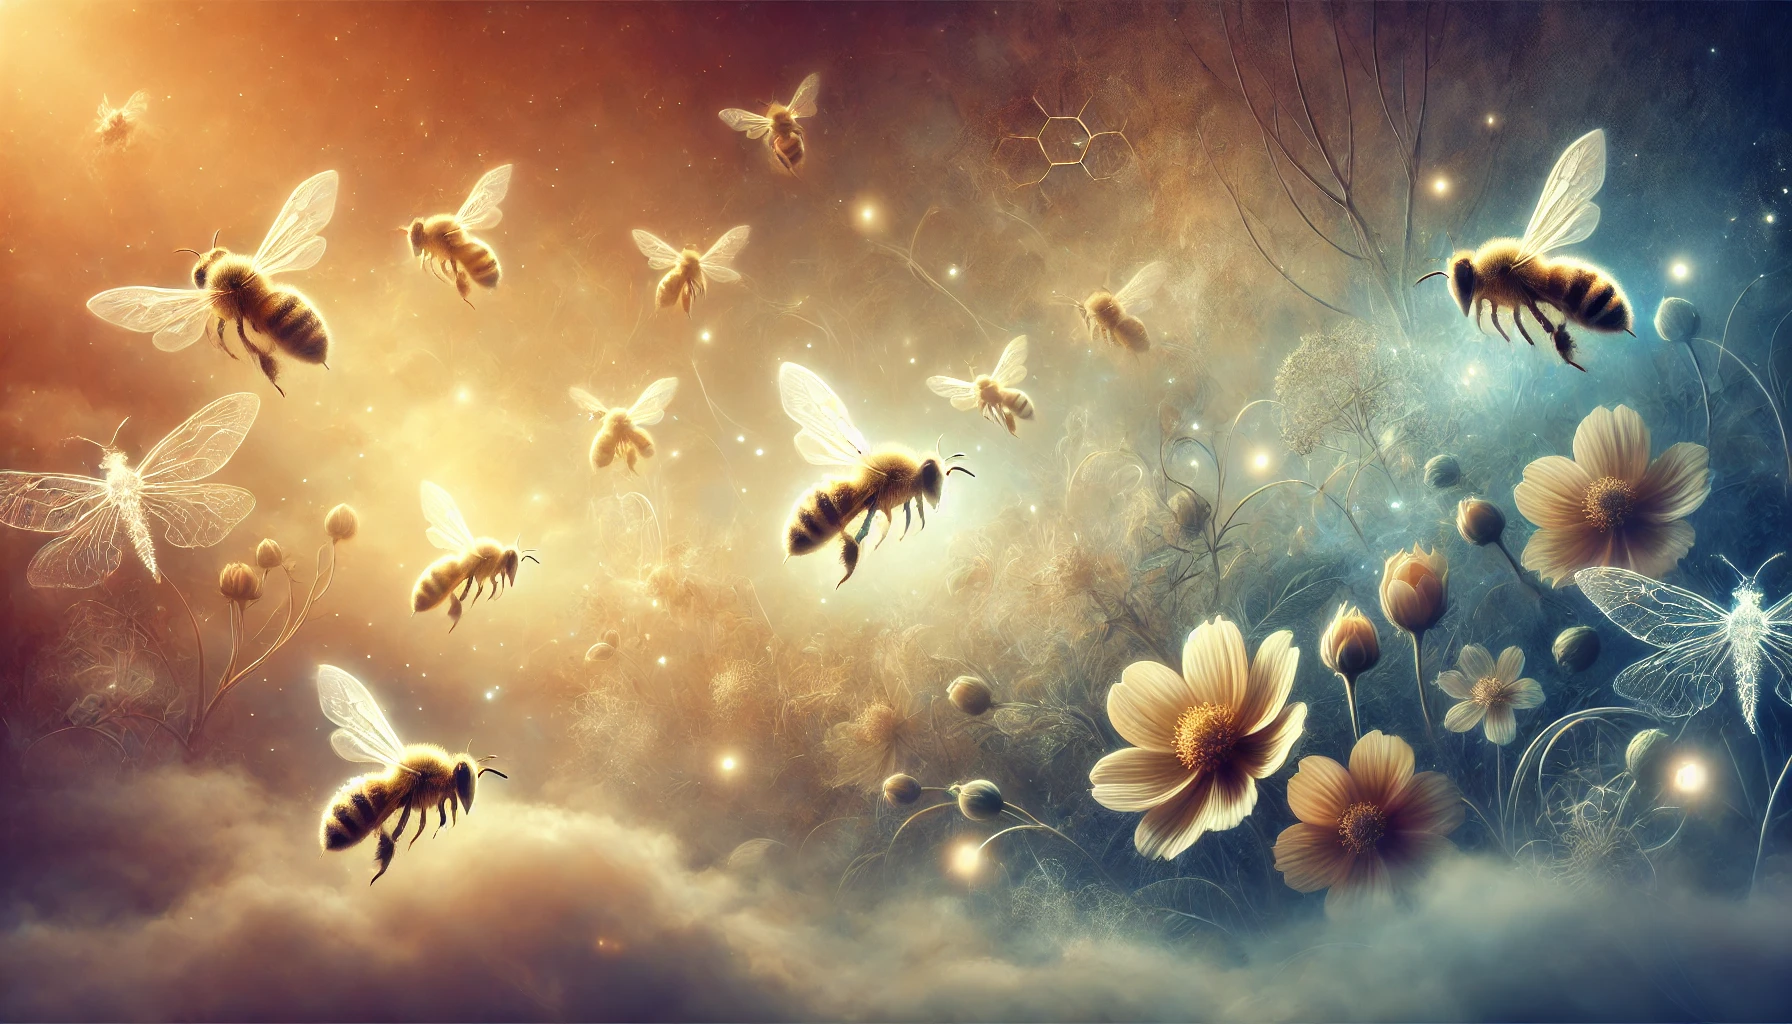 Rüyada Arı Görmek | Arı Sokması | Arı Öldürmek Ne Demektir?